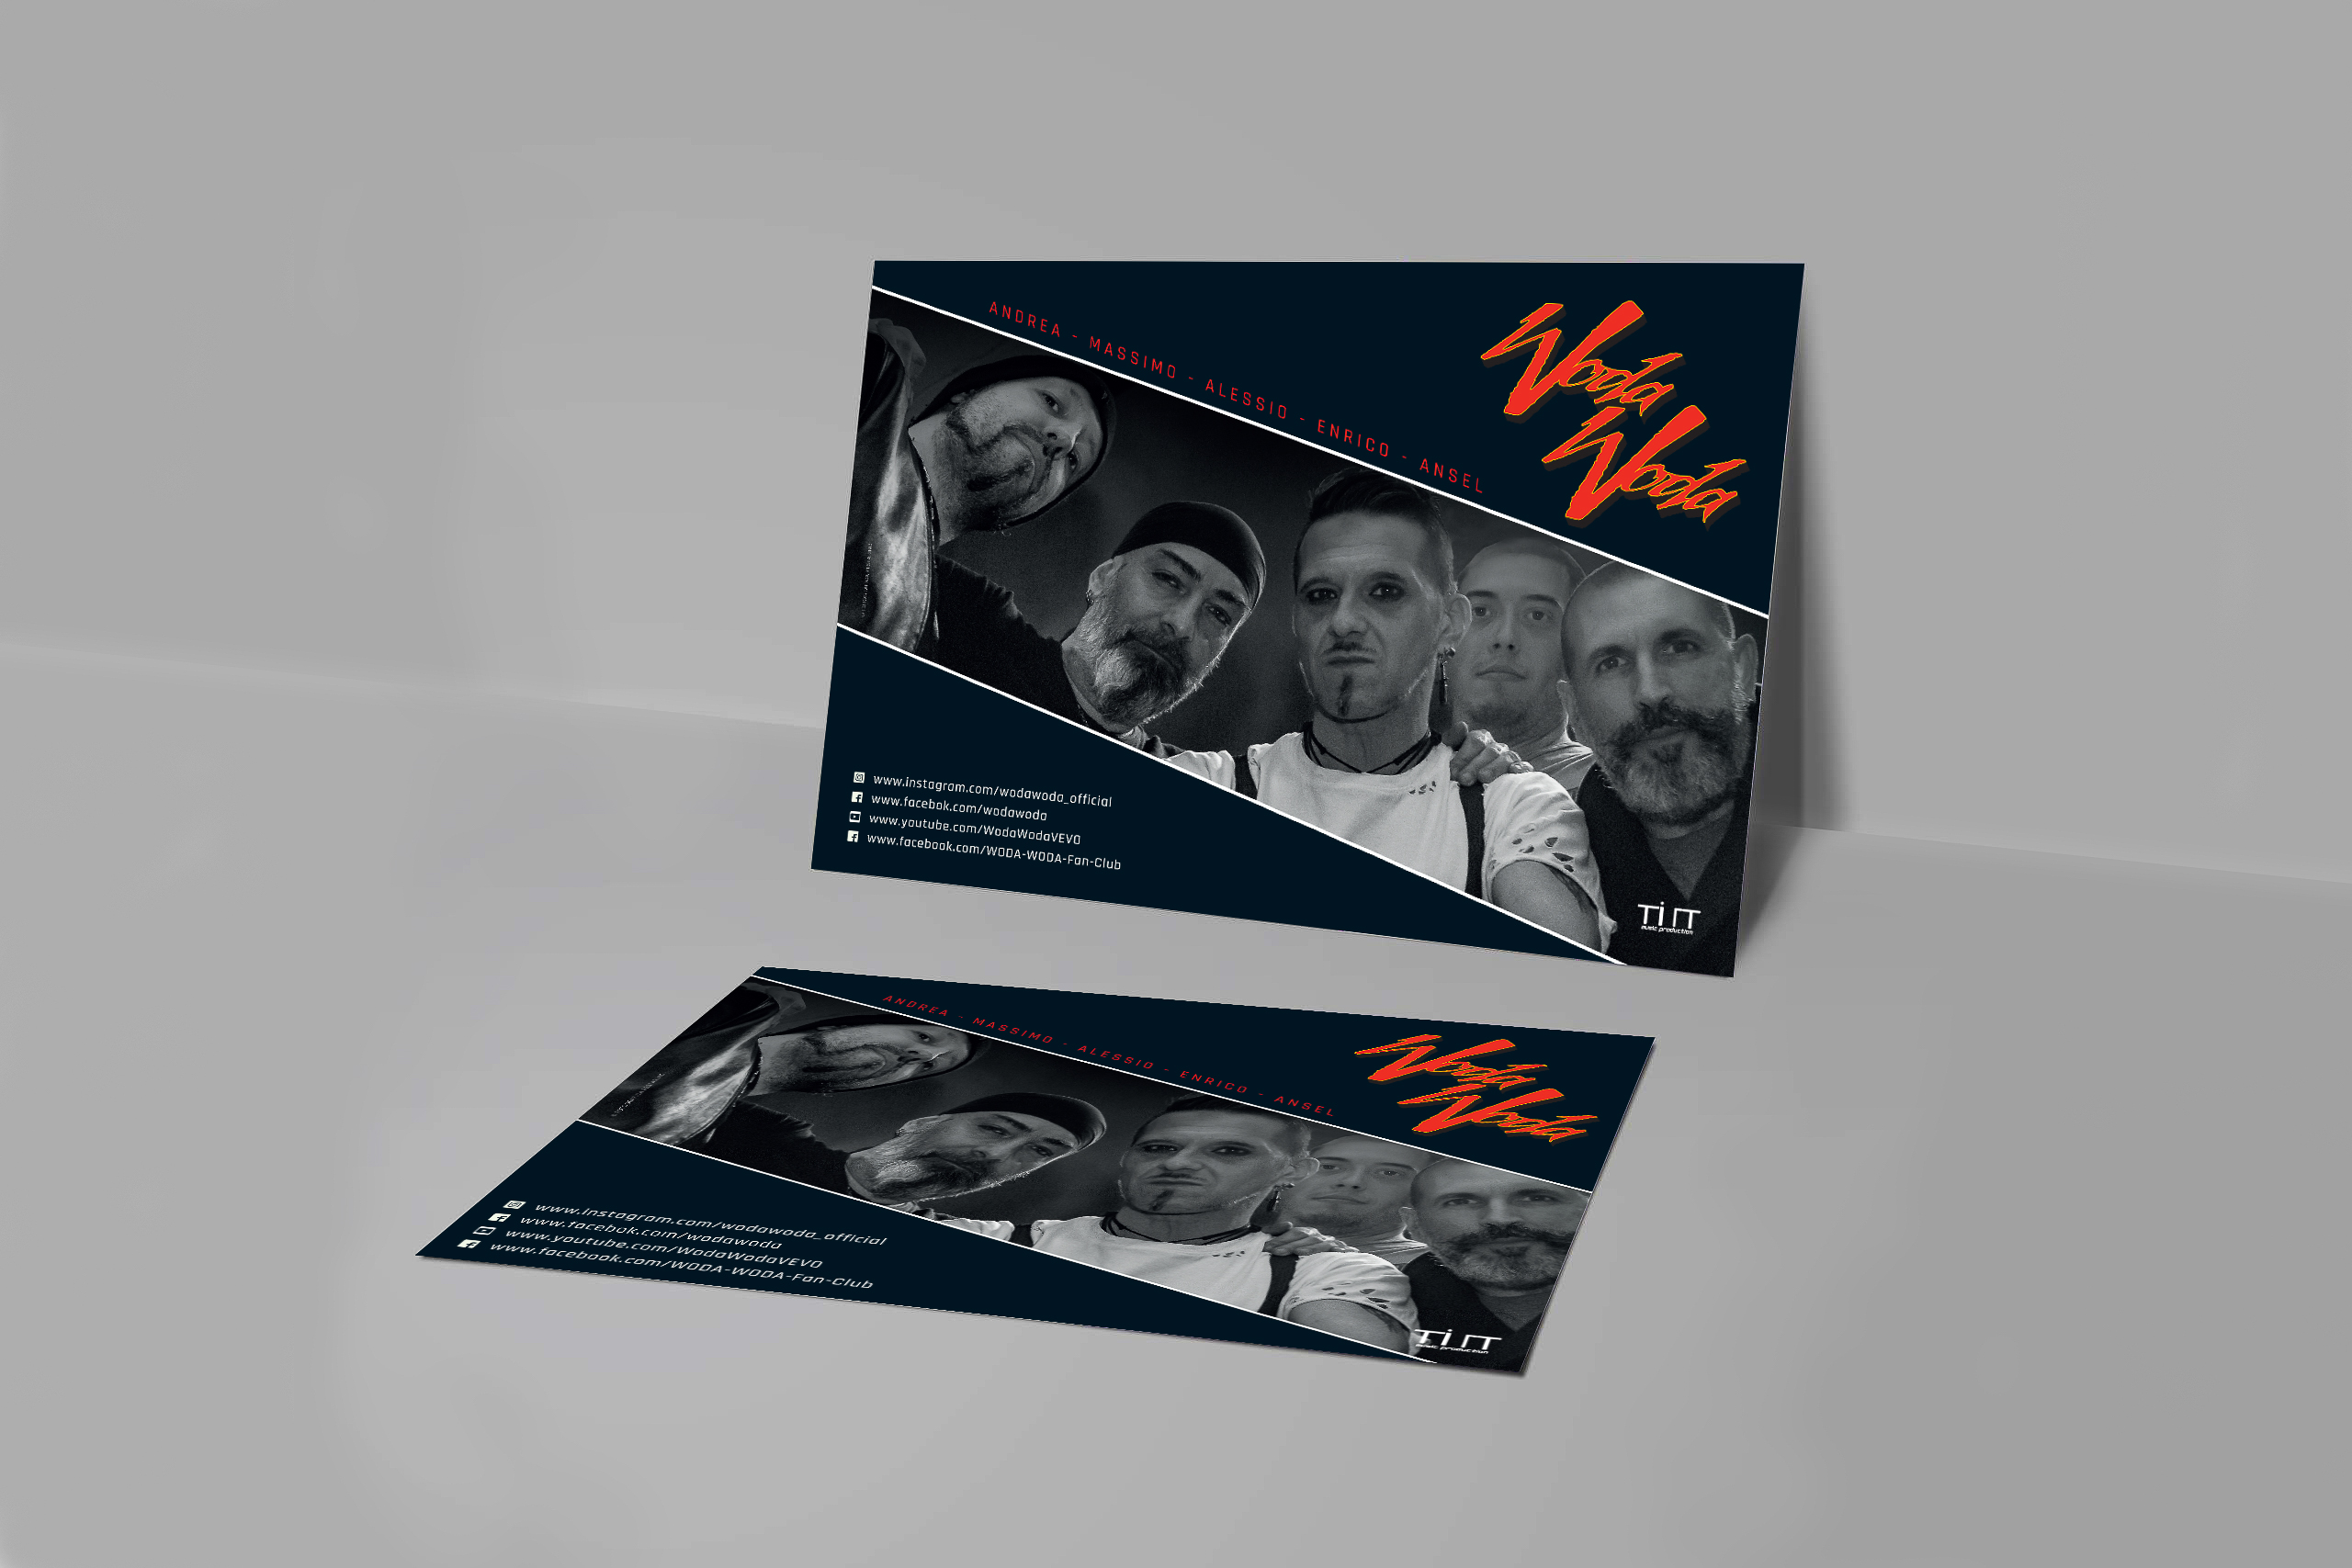 Cartolina promozionale per il gruppo musicale alternative rock Woda Woda